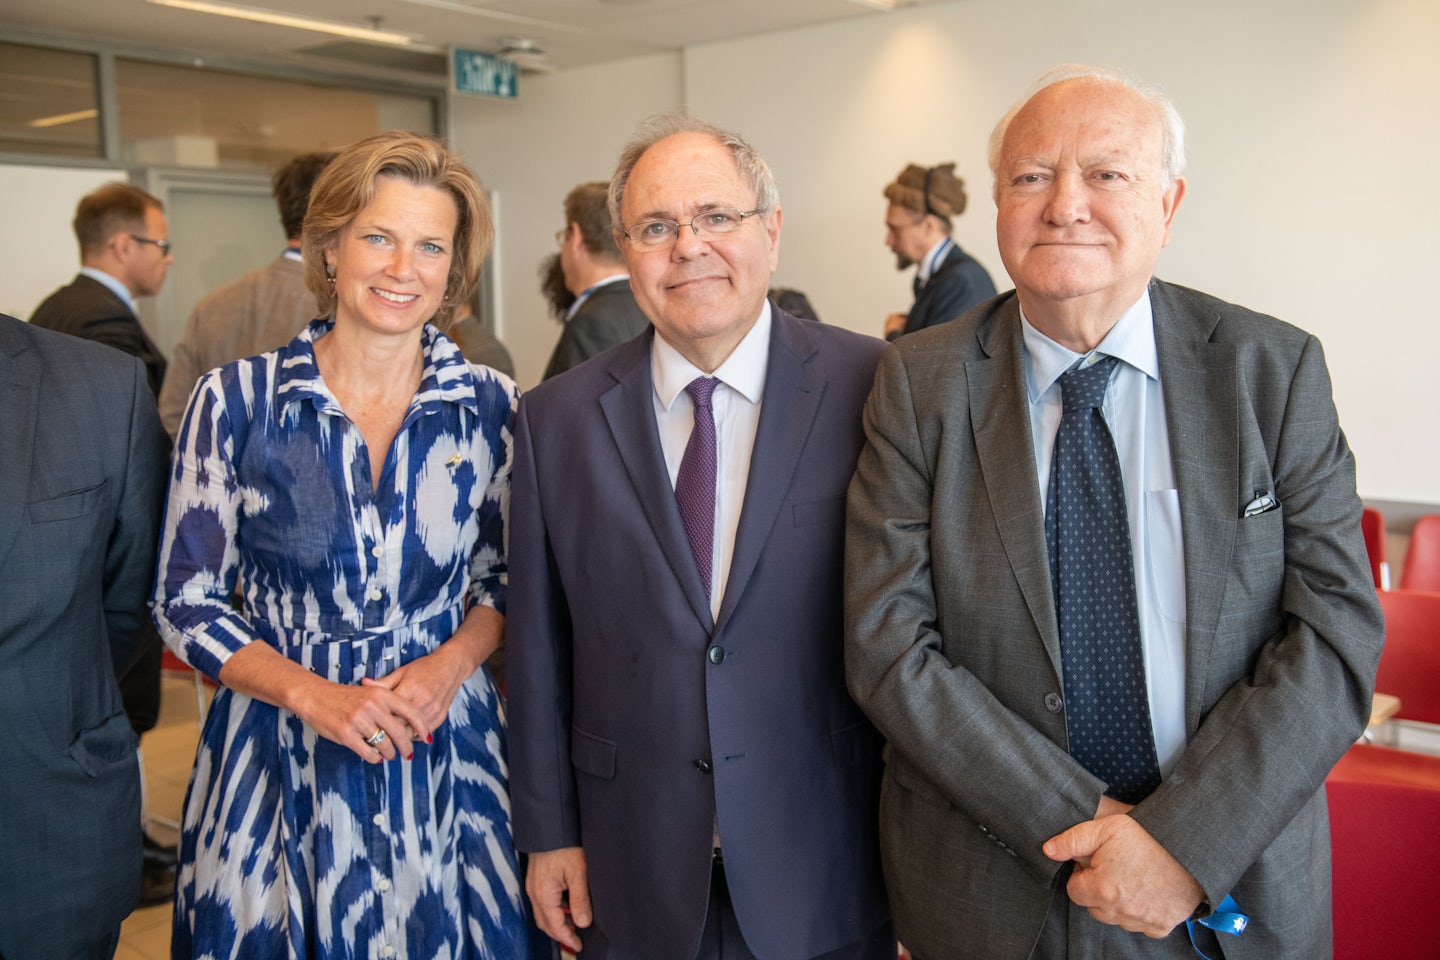 From left to right: Katharina Von Schnurbein, Dani Dayan, Ángel Moratinos  (c) World Jewish Congress / Shahar Azran